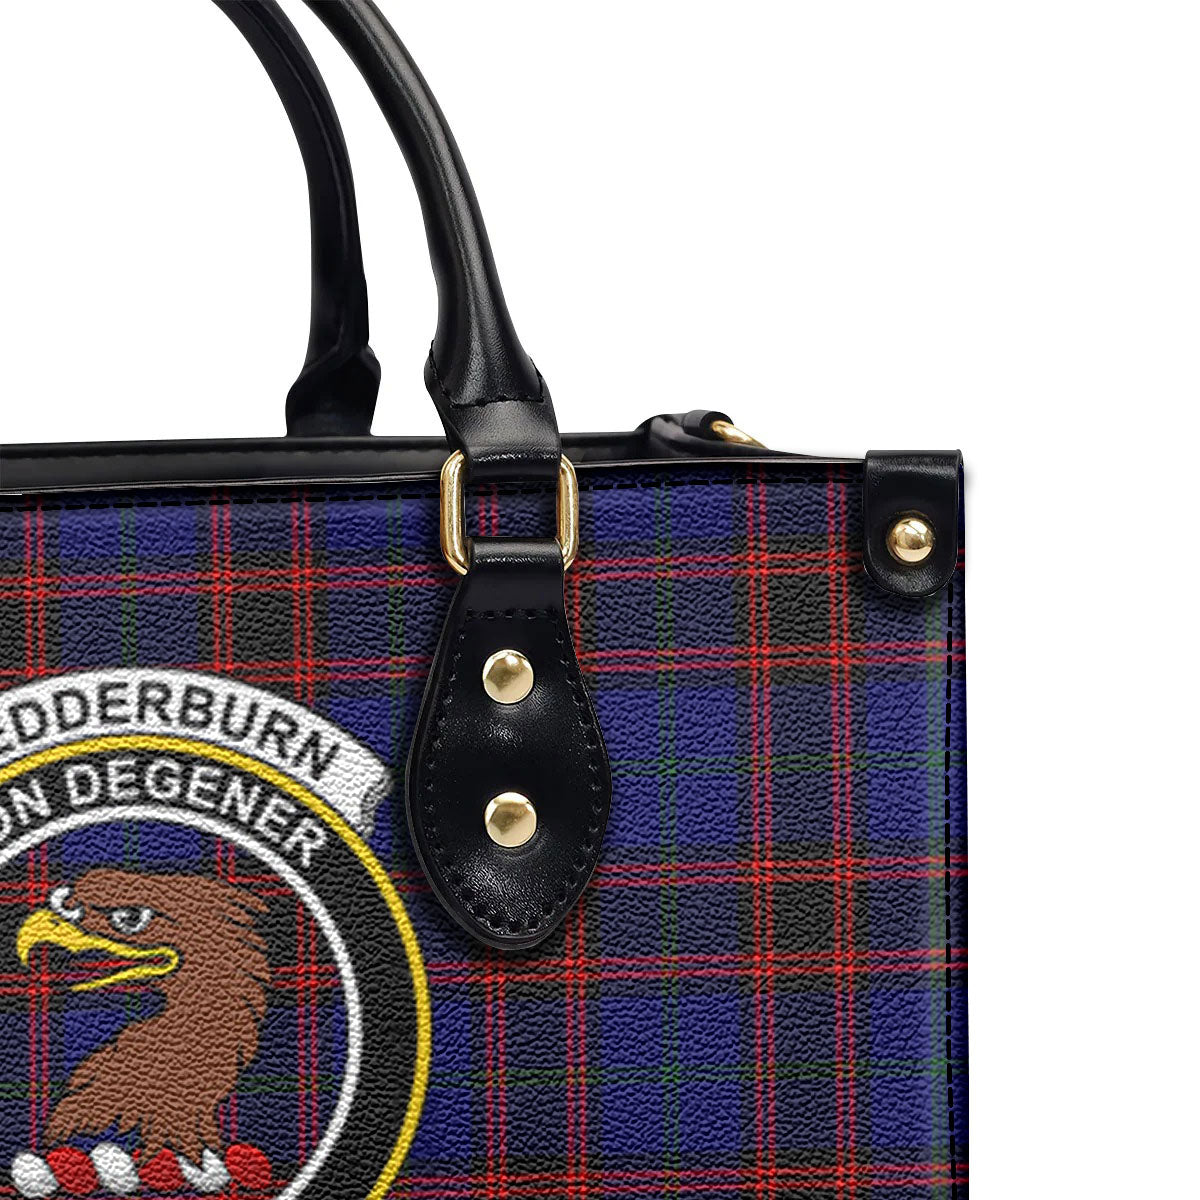 Wedderburn Tartan Crest Leather Handbag